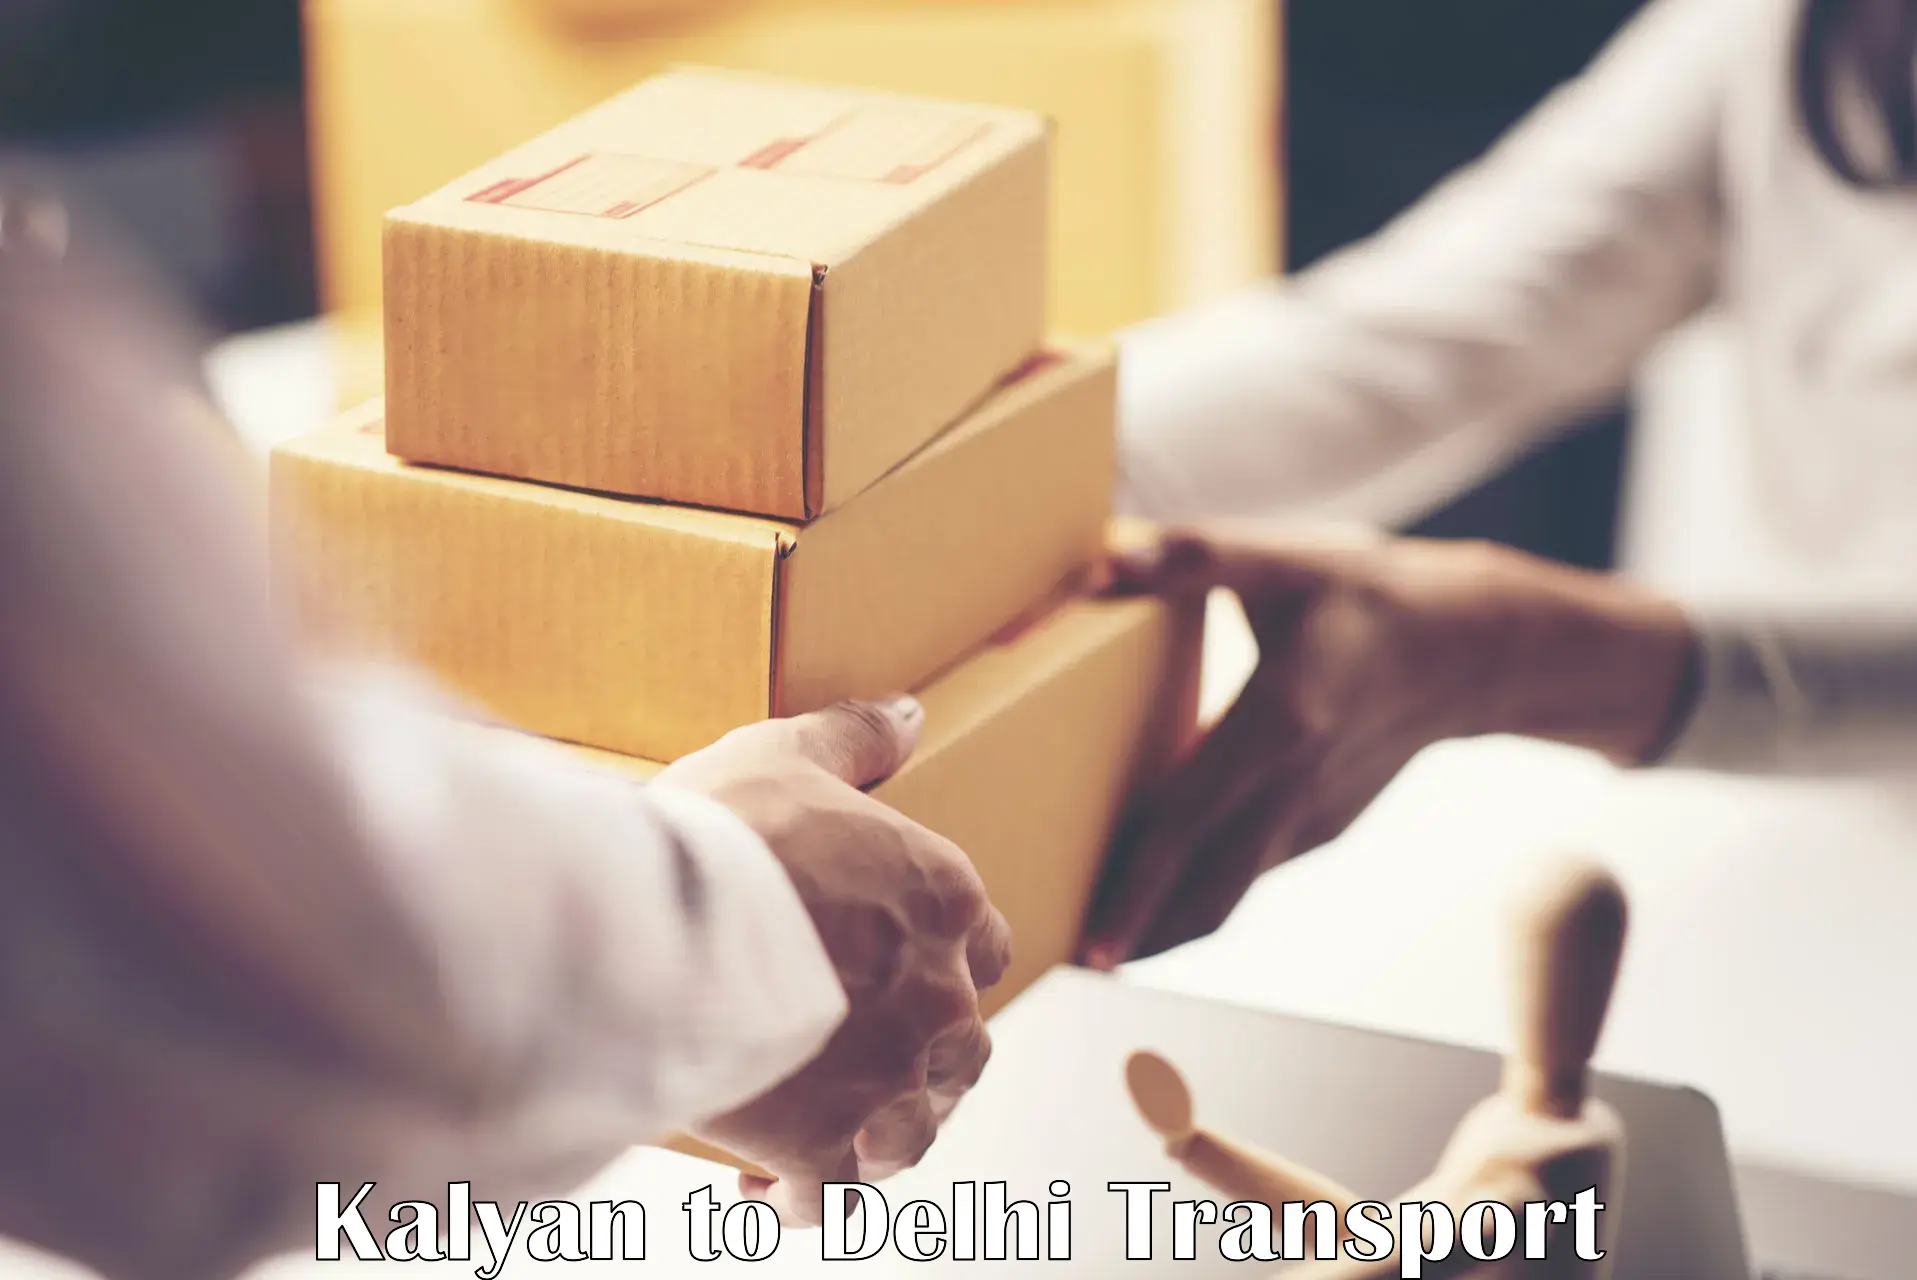 Road transport online services Kalyan to Burari